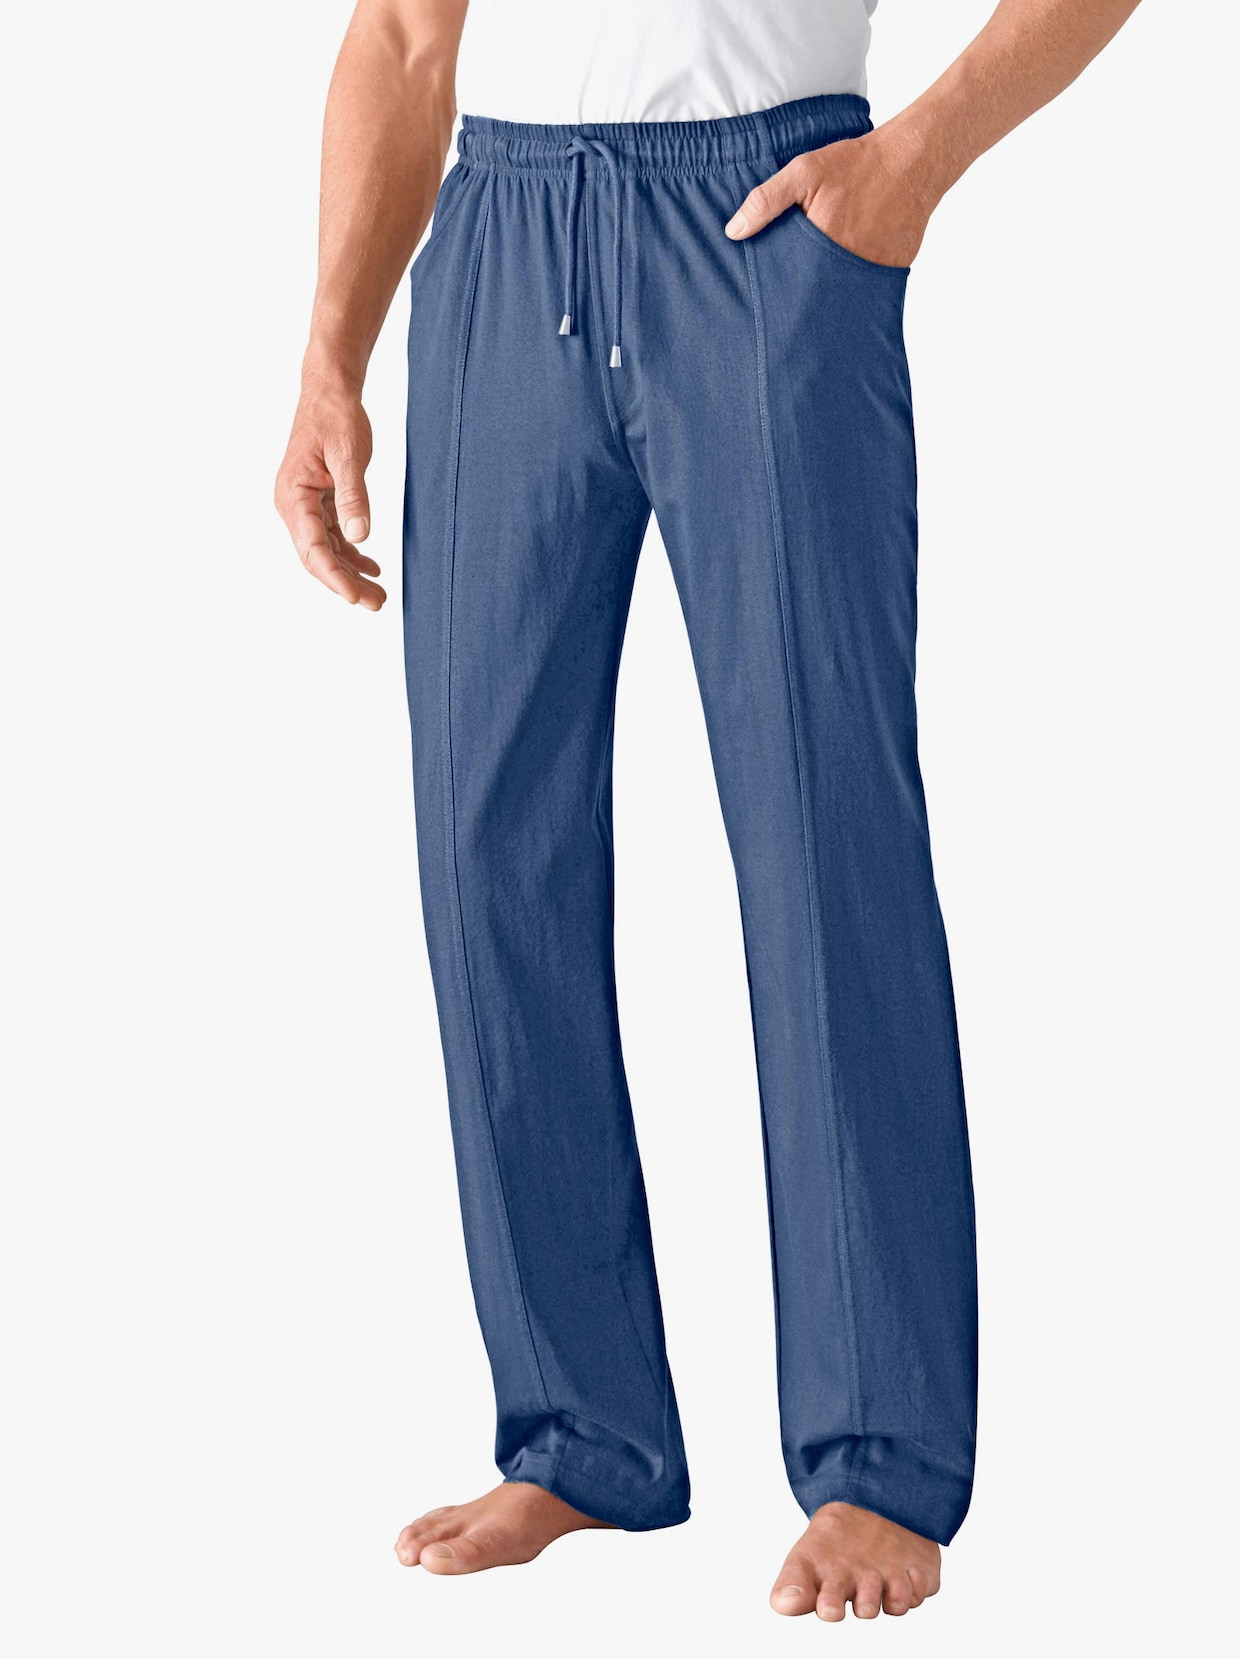 Kalhoty pro volný čas - džínová modrá